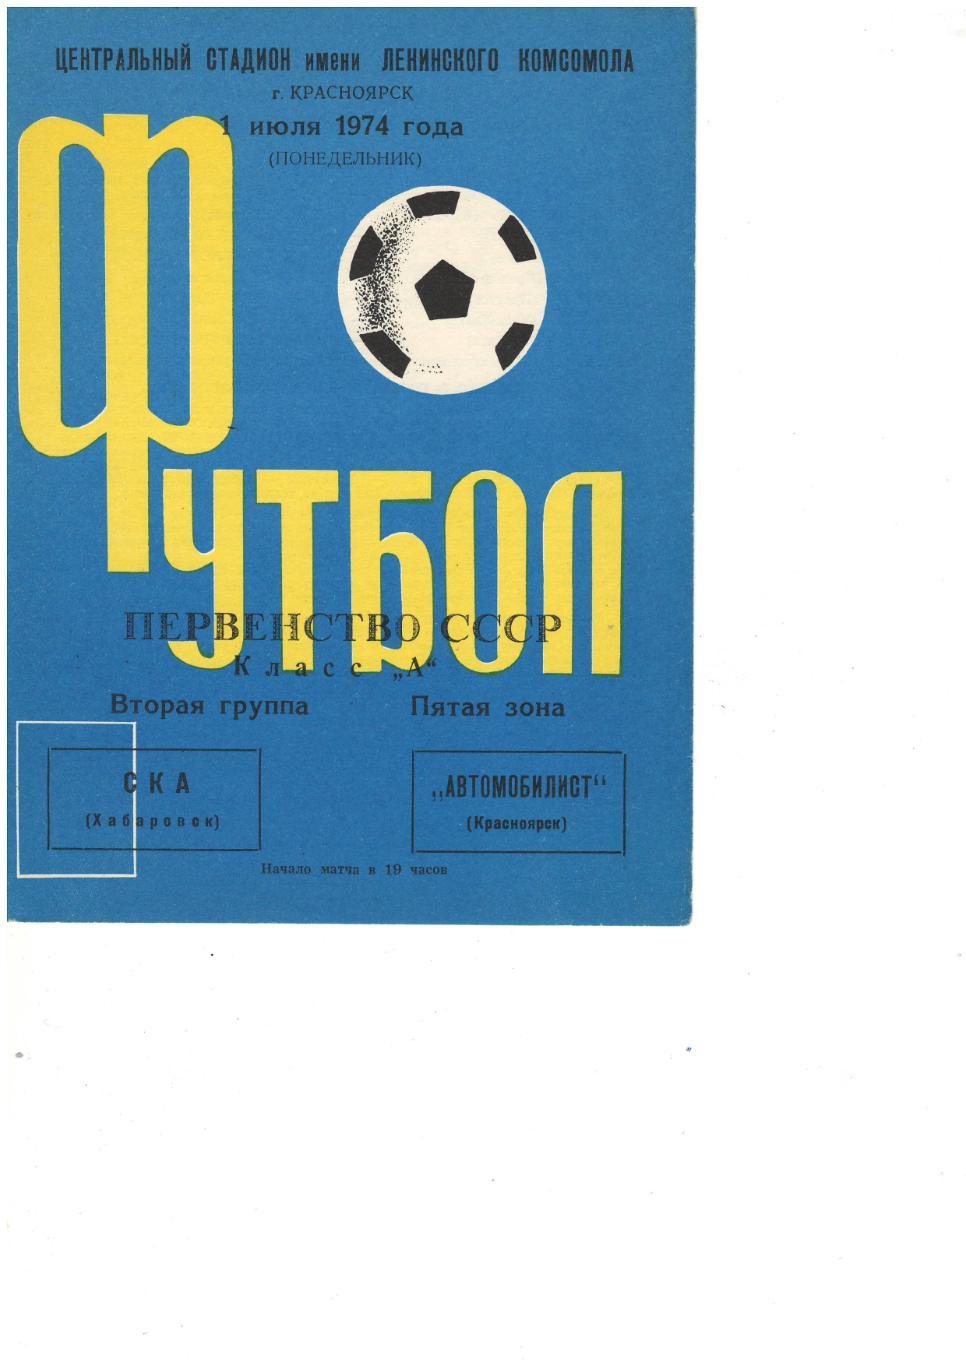 Автомобилист Красноярск - СКА Хабаровск 01.07.1974